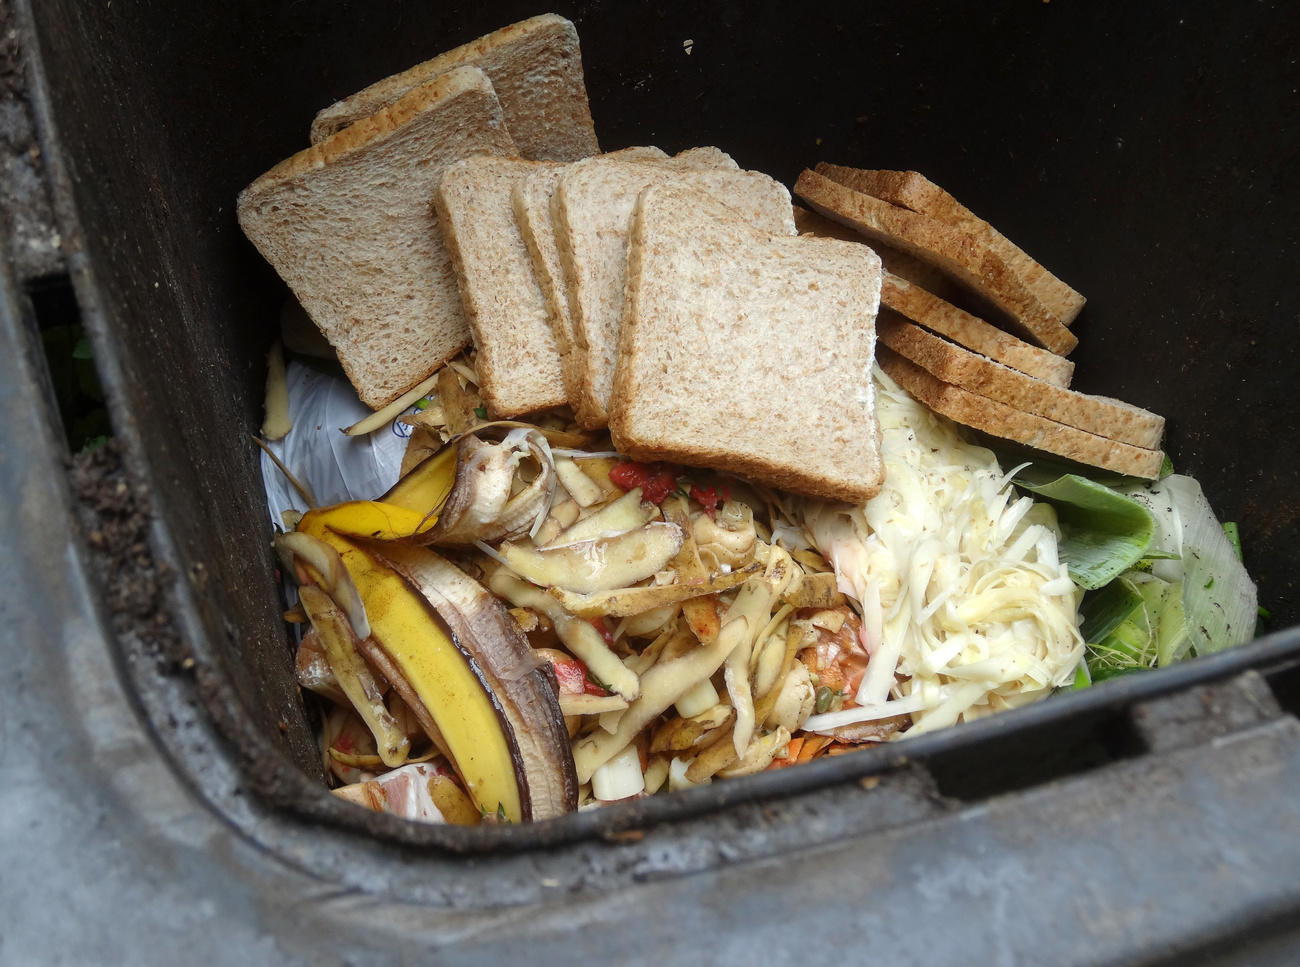 food in a bin